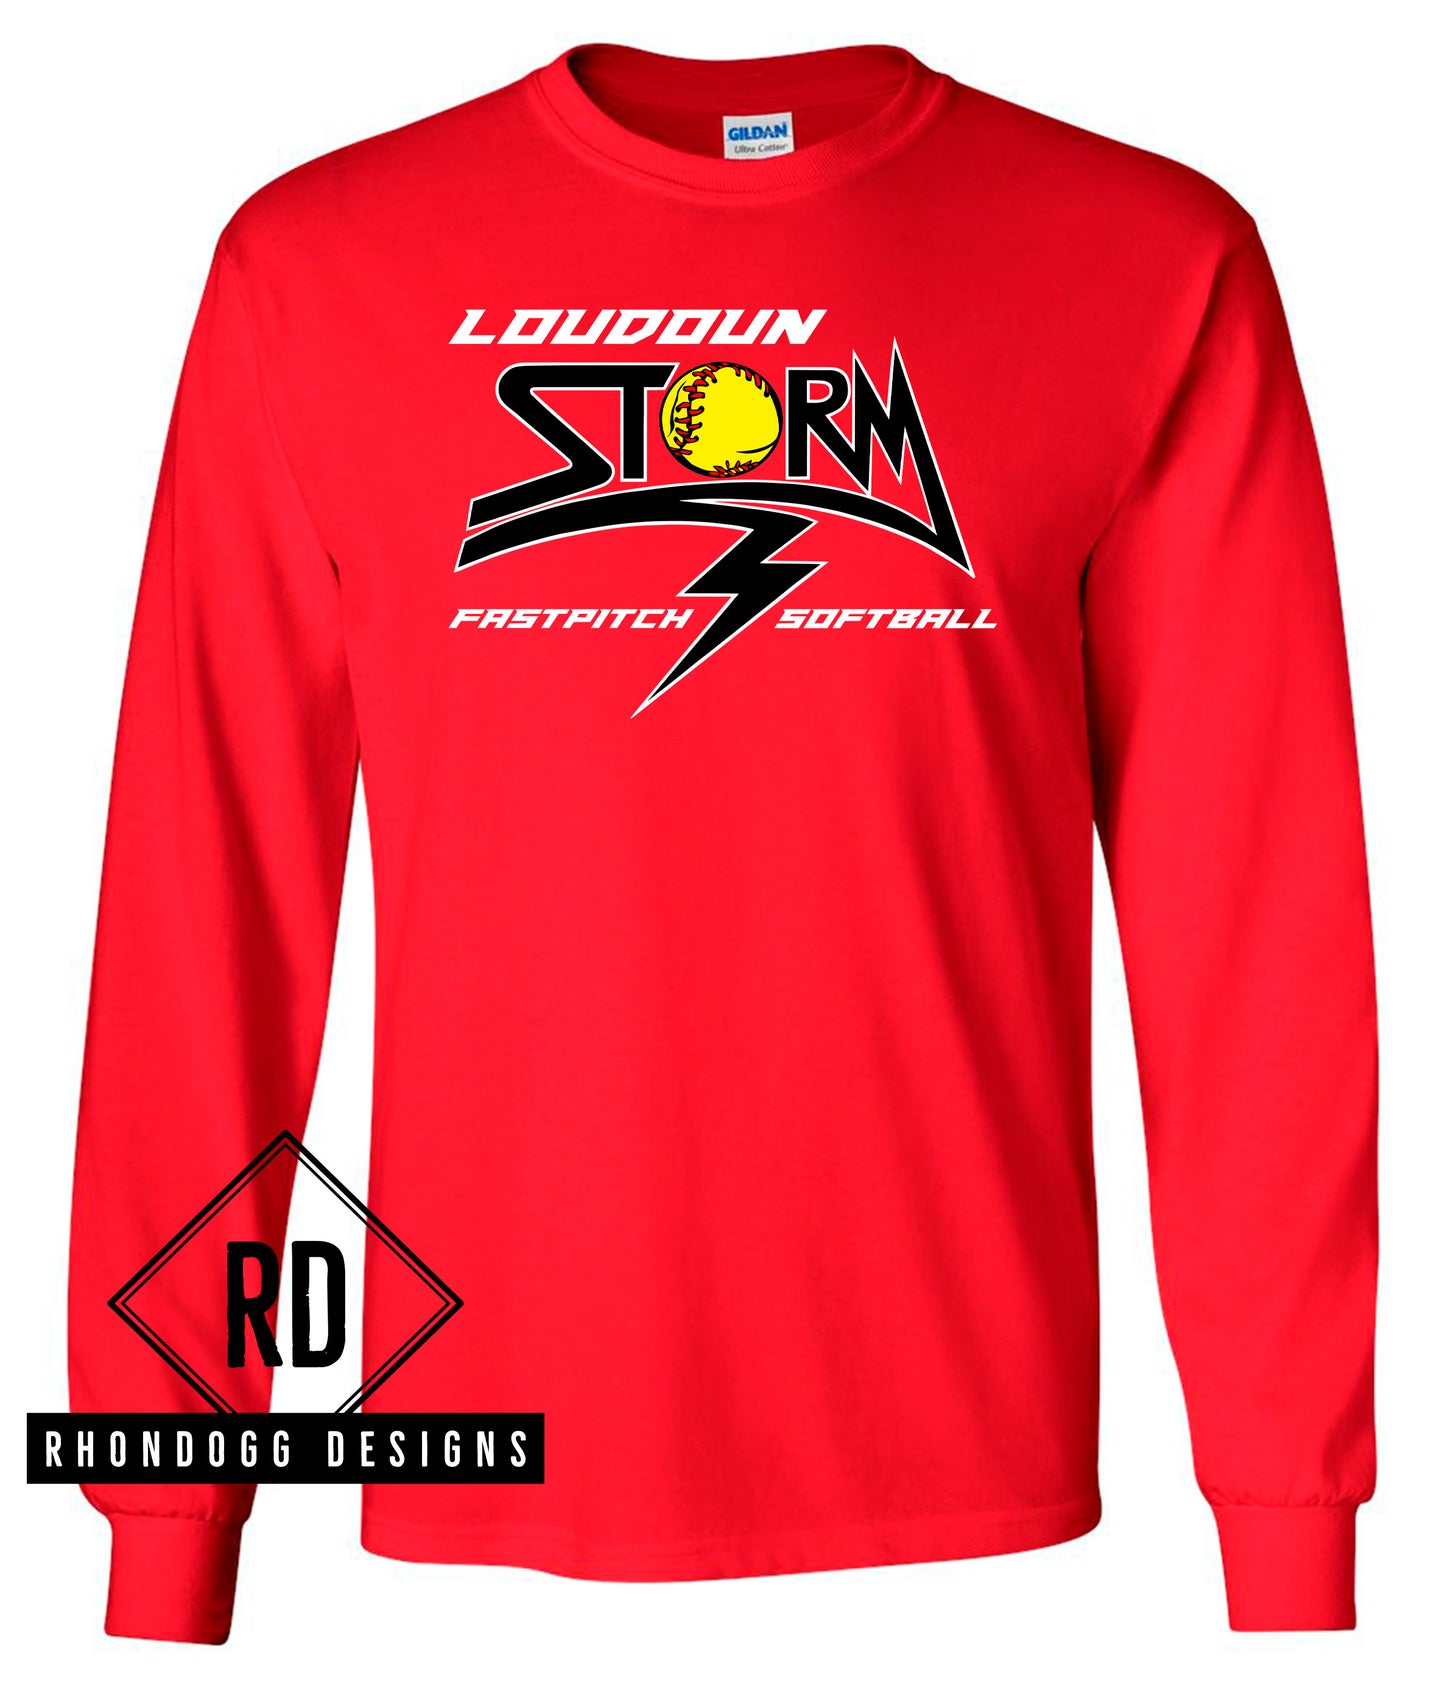 Gildan Loudoun Storm Long Sleeve Cotton T-Shirt